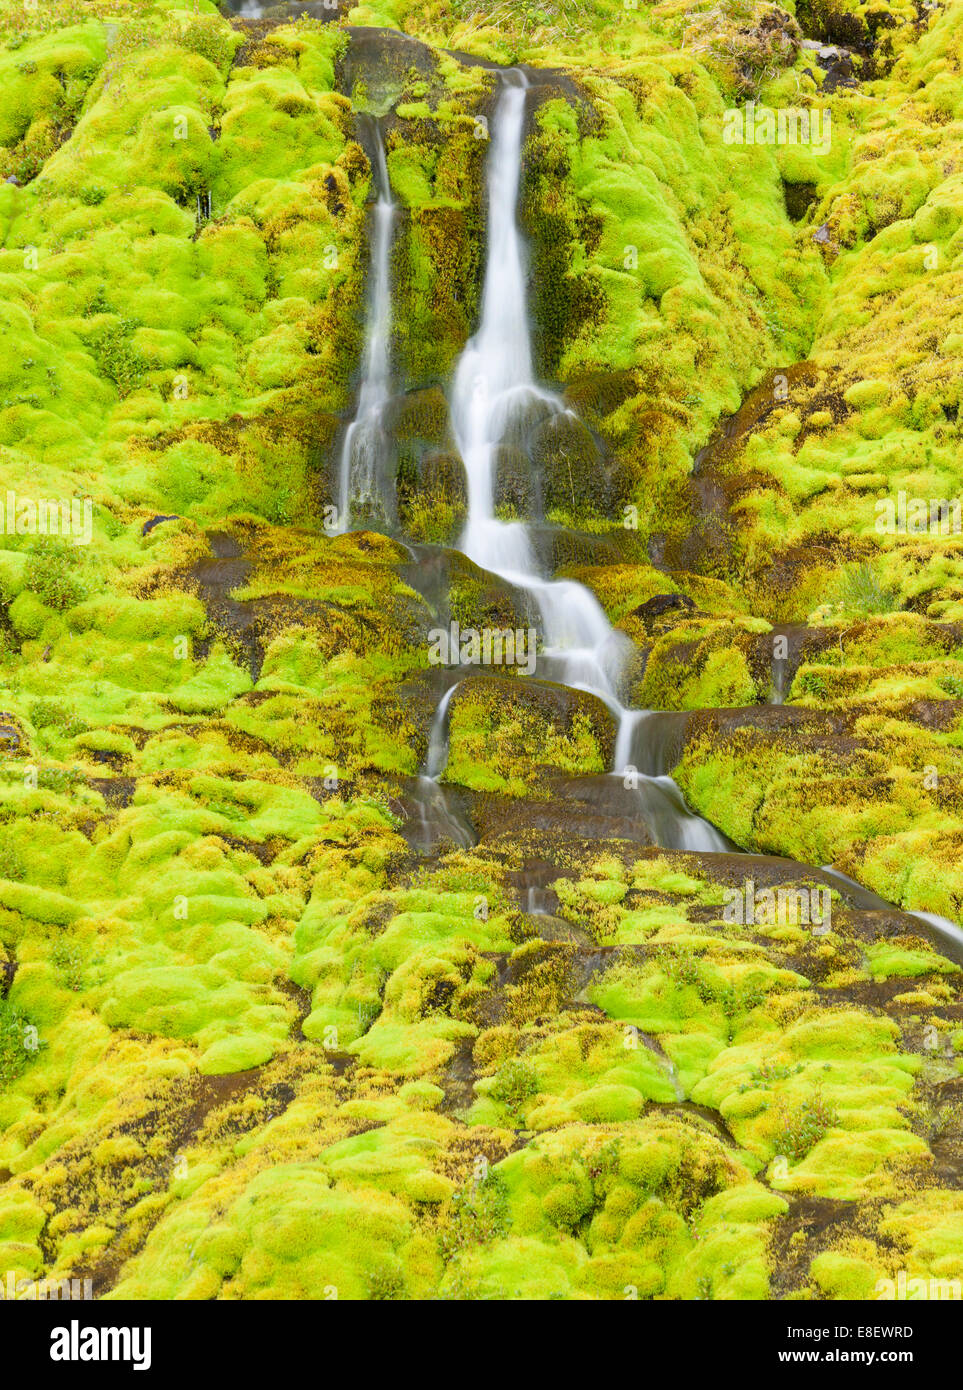 Une petite chute d'eau cascadant une paroi de rochers recouverts de mousse d'Islande Westfjords, Latrabjarg, ou des fjords de l'Ouest Banque D'Images